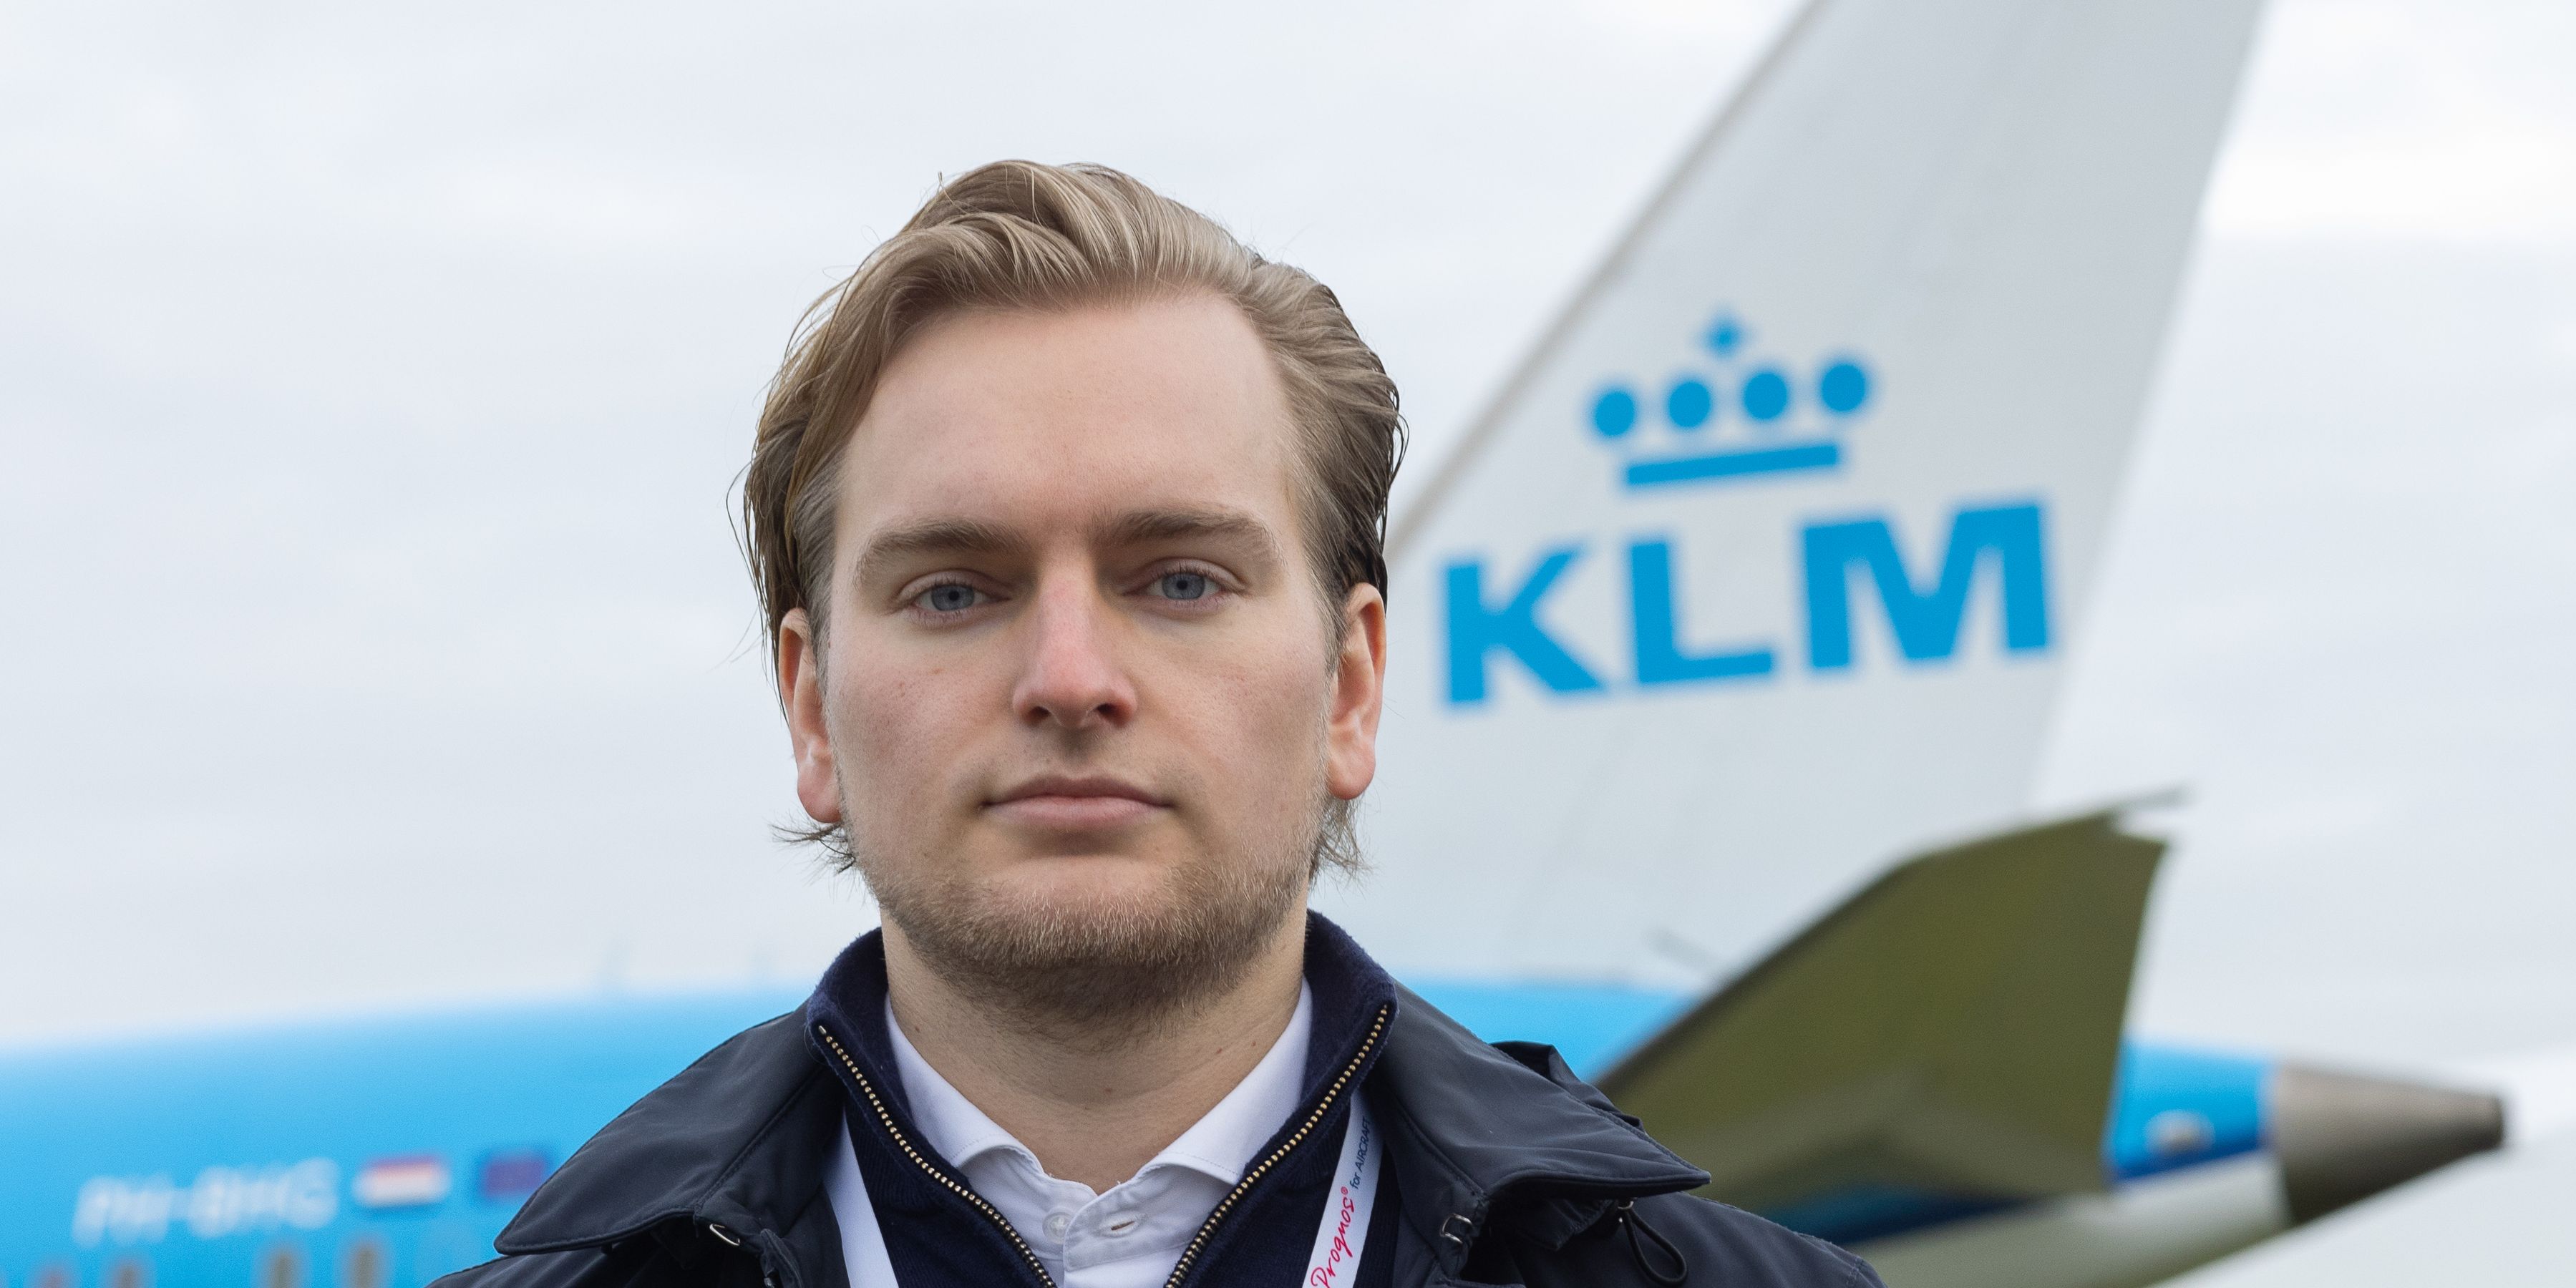 KLM collega Marc voor een KLM vliegtuig